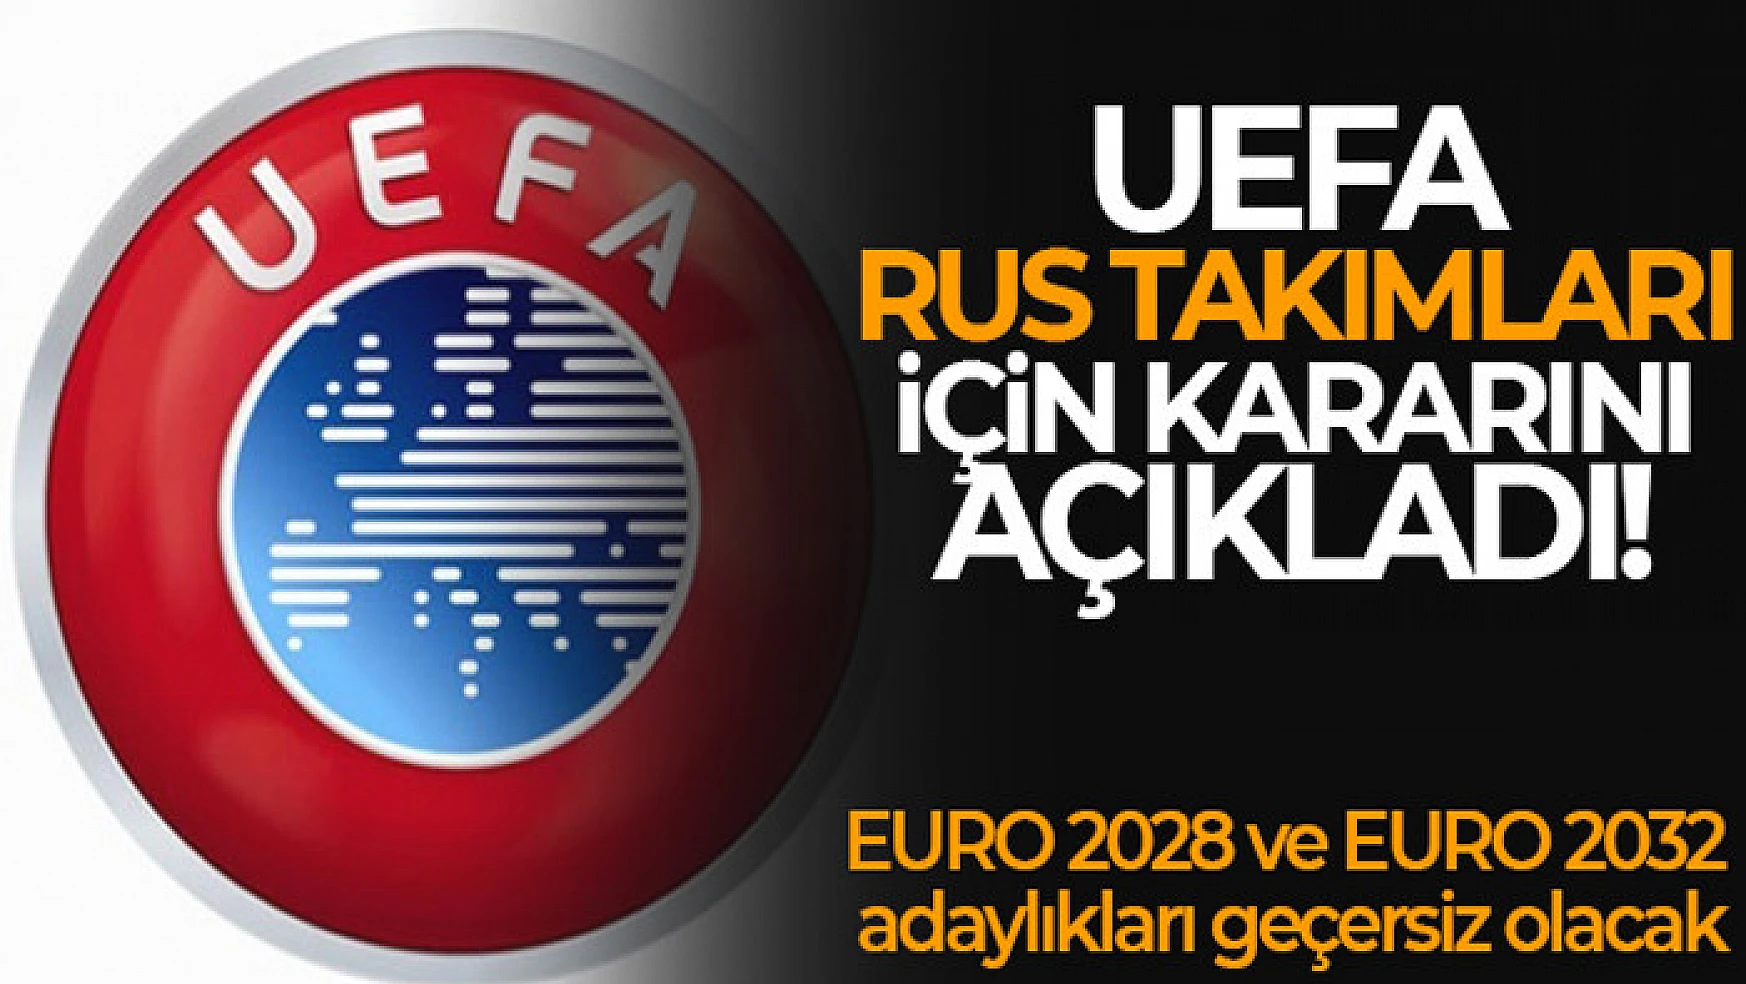 UEFA, Rusya'ya yaptırım kararını bir yıl daha uzattı